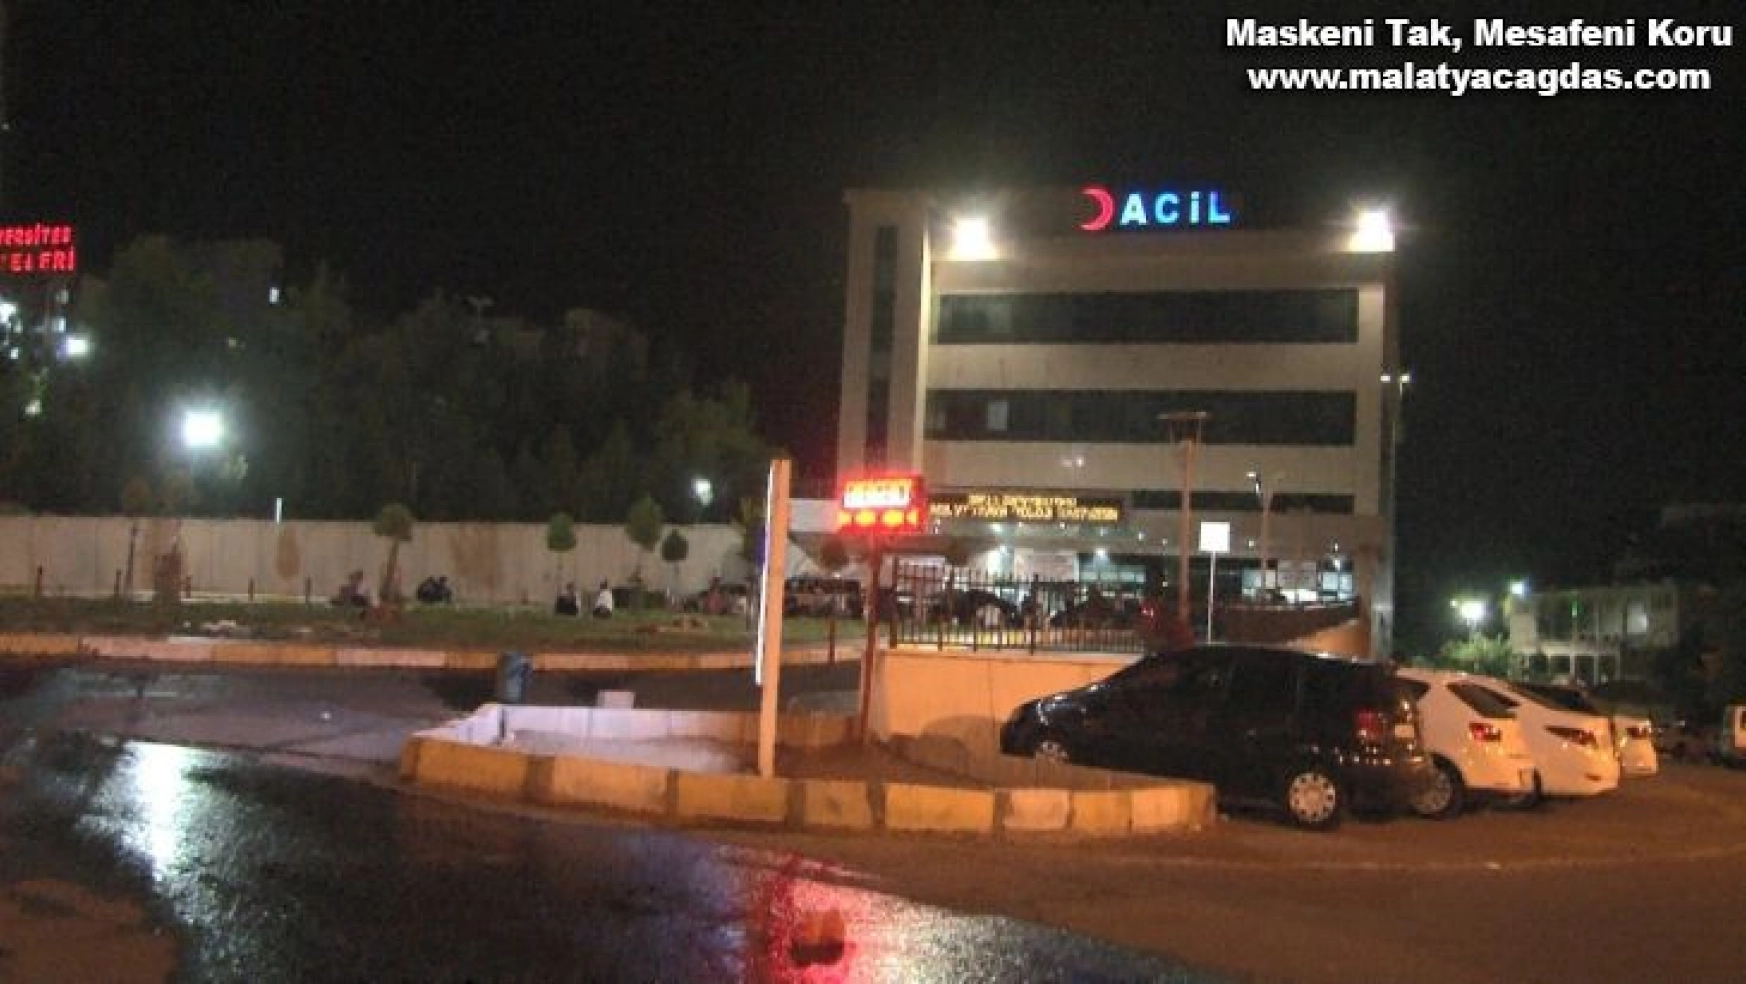 Diyarbakır'da damat pompalı tüfekle dehşet saçtı: 1 ölü, 1 yaralı